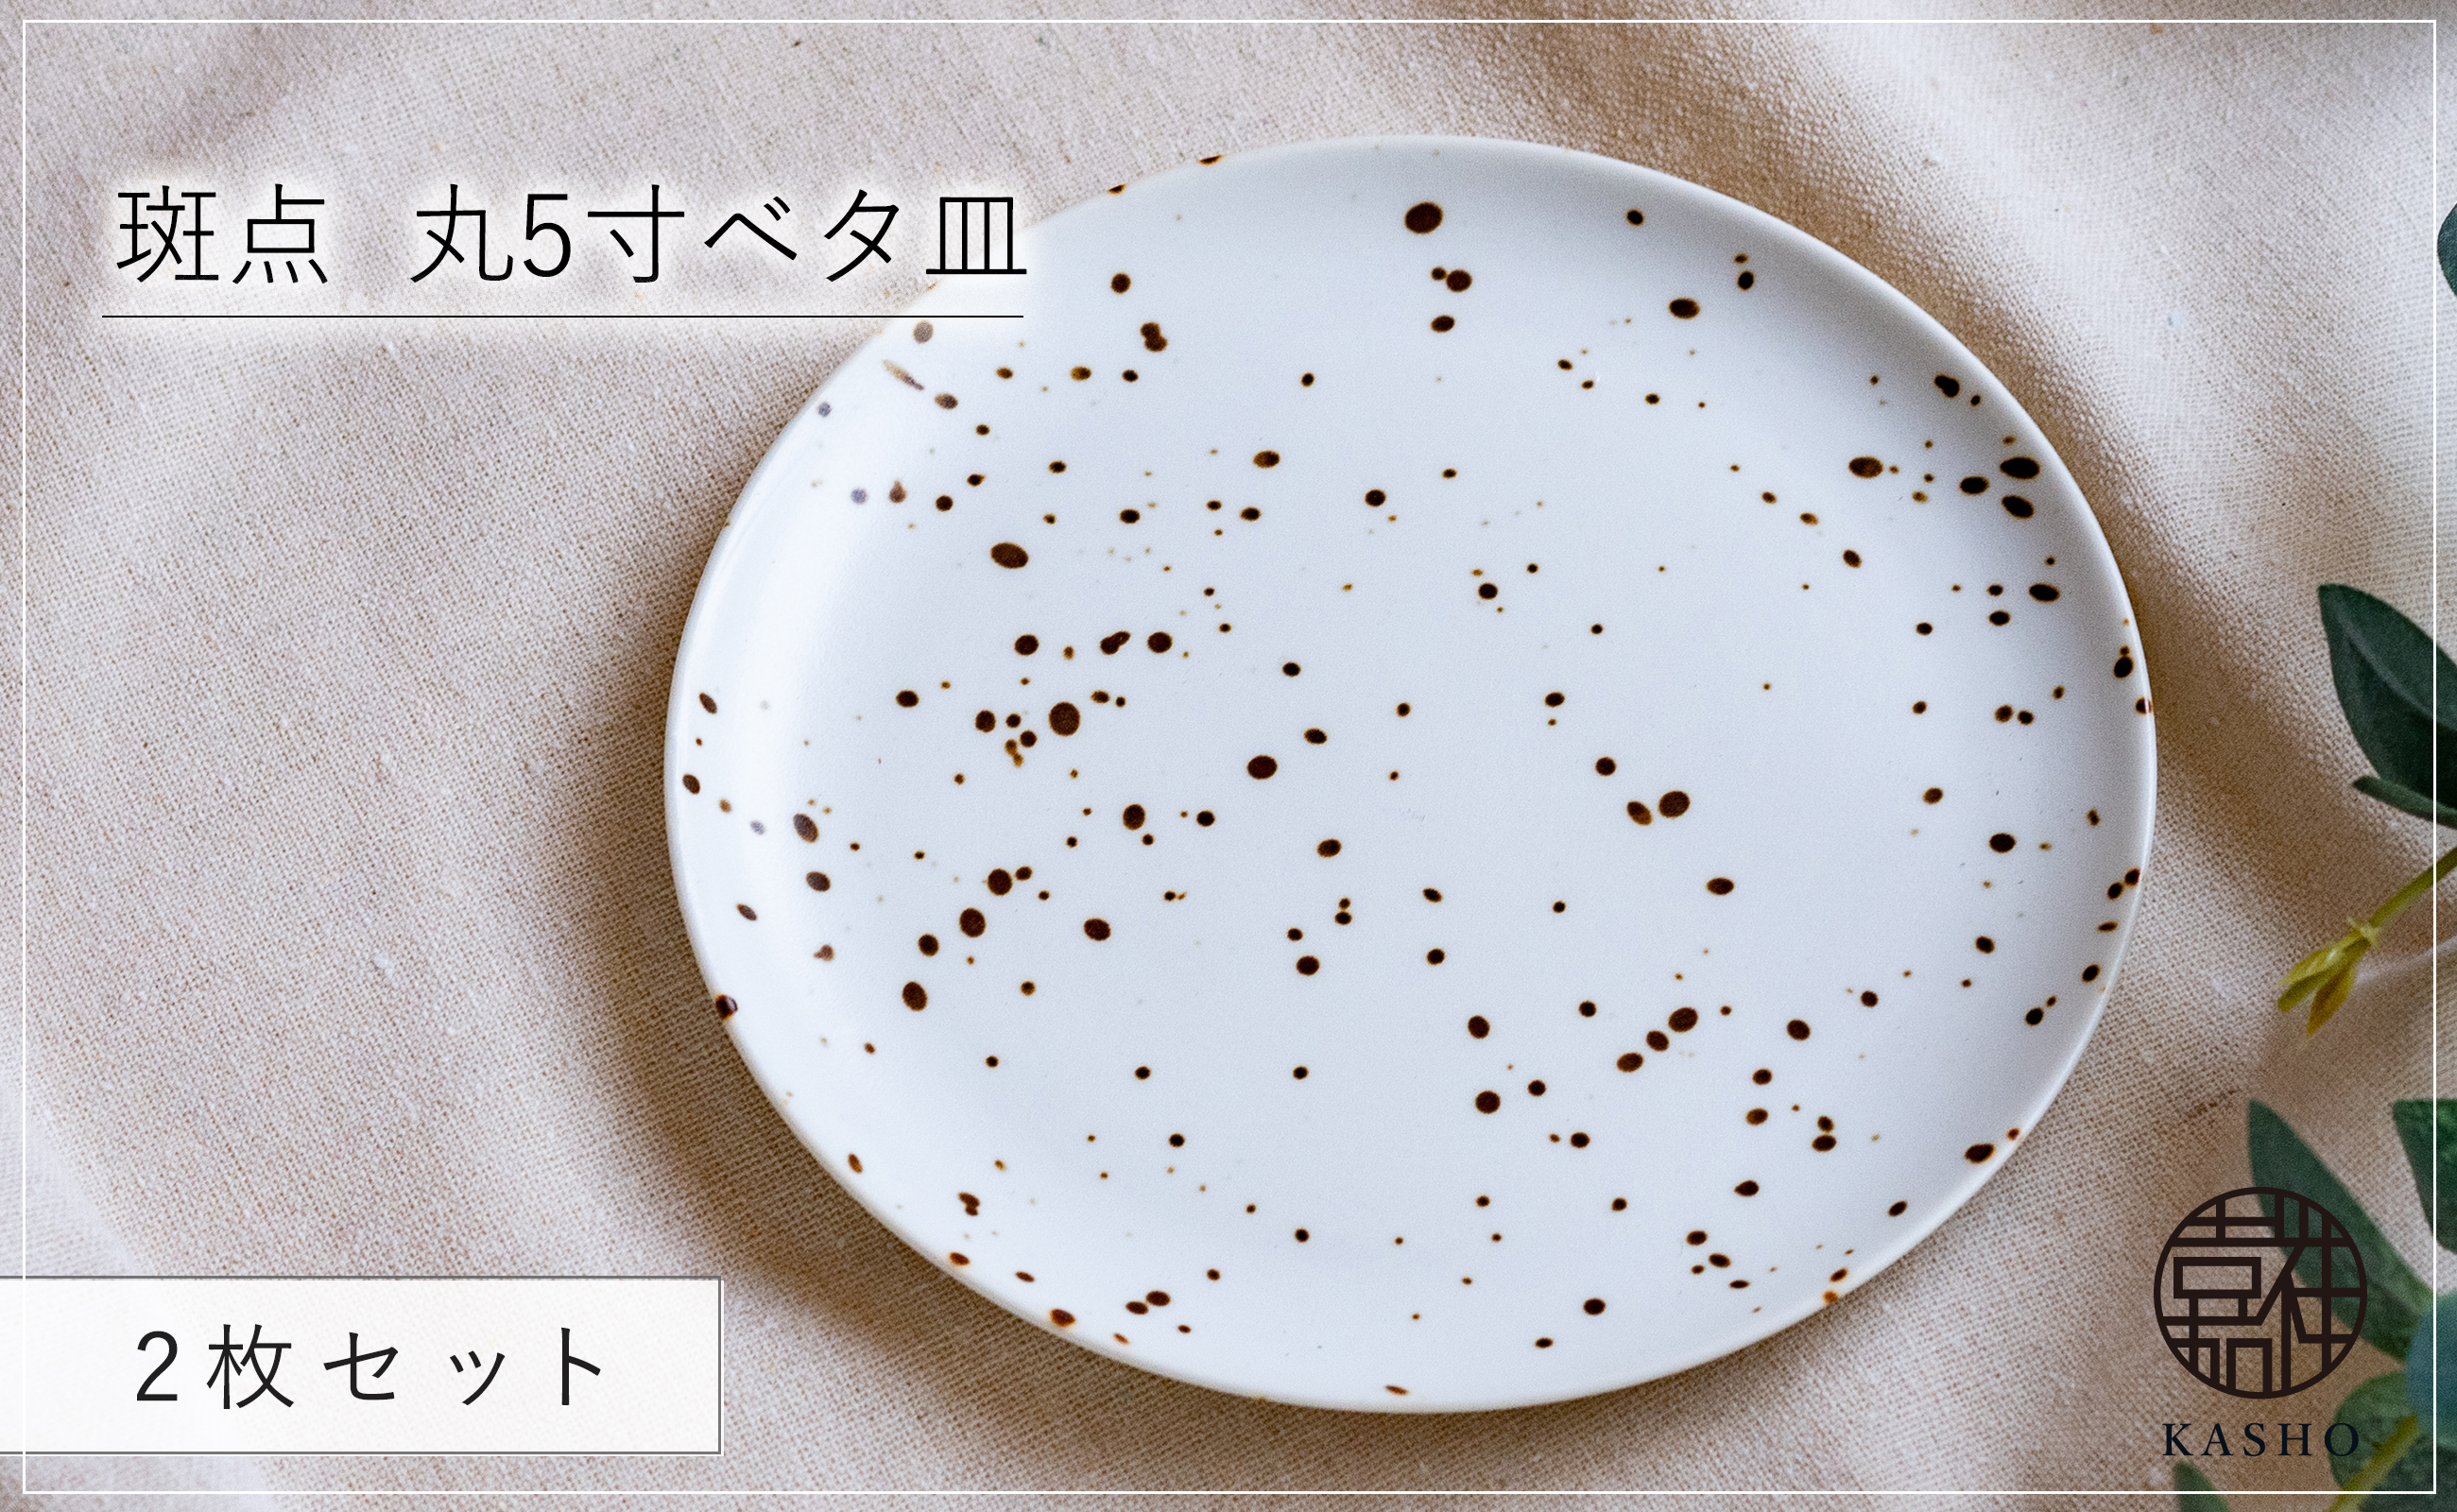 〈平戸嘉祥窯〉斑点 丸5寸ベタ皿 2枚セット 取り皿 ケーキ皿 パン皿 食器 皿